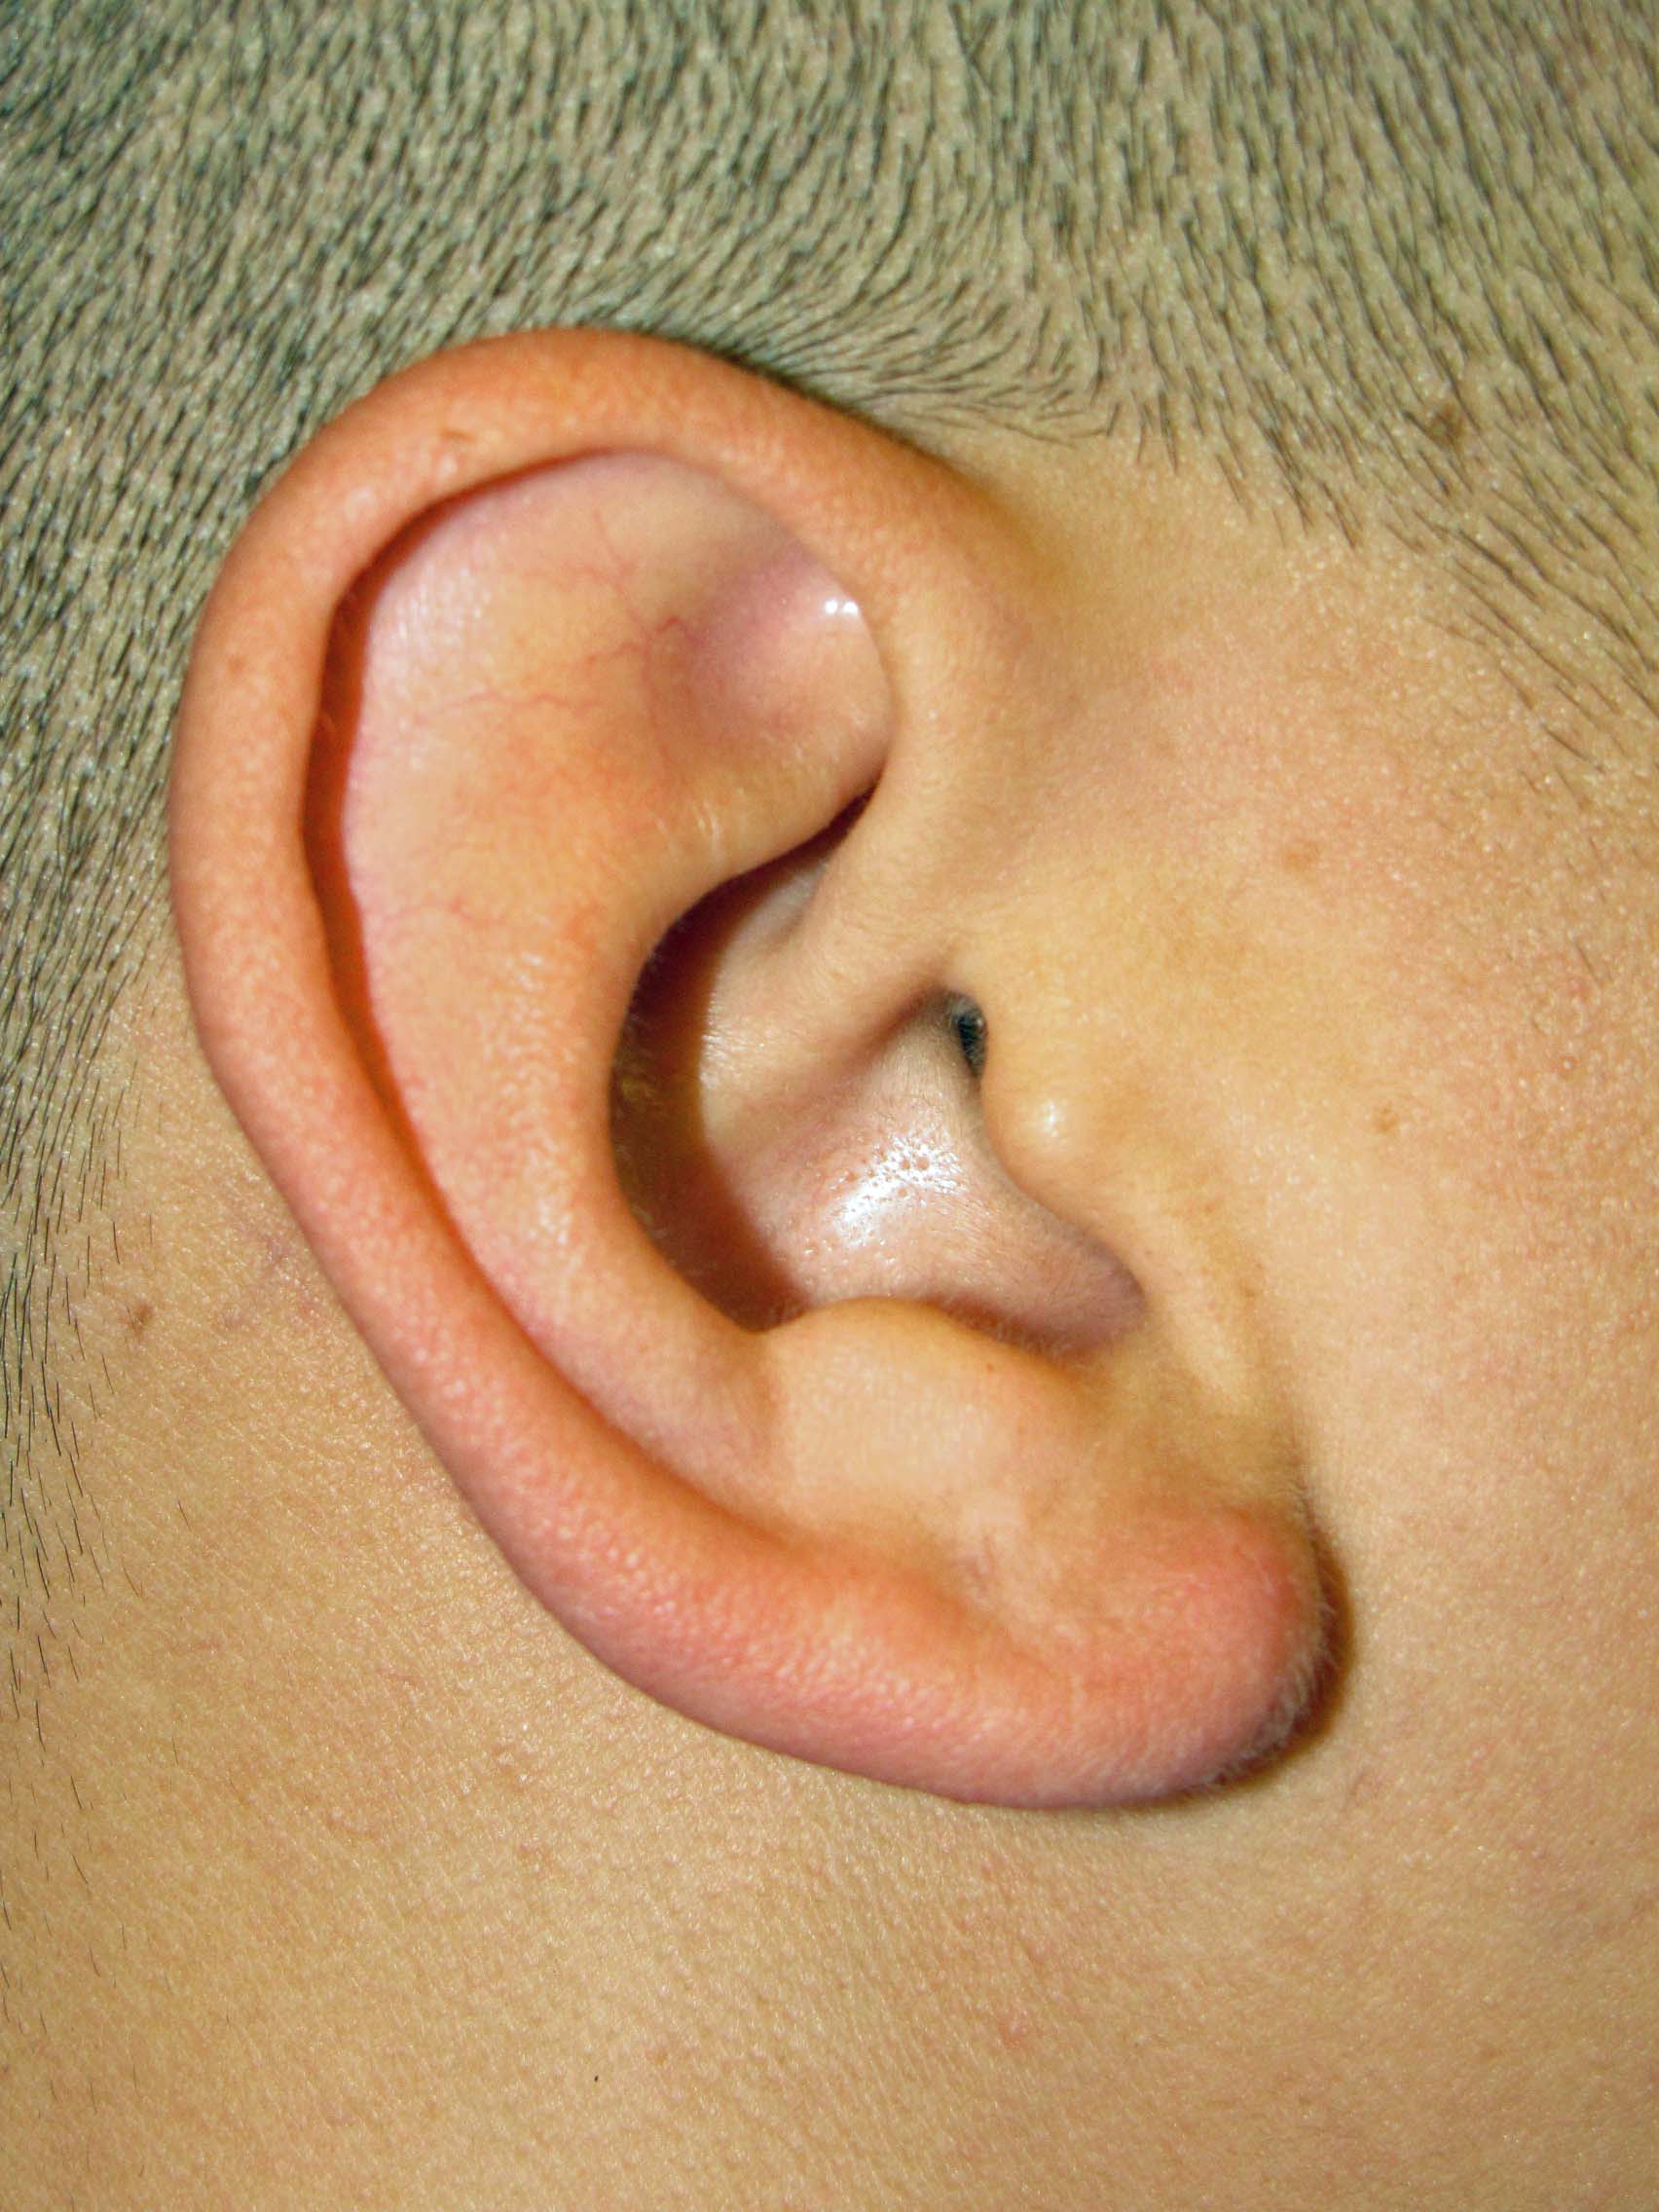 keloids on ears